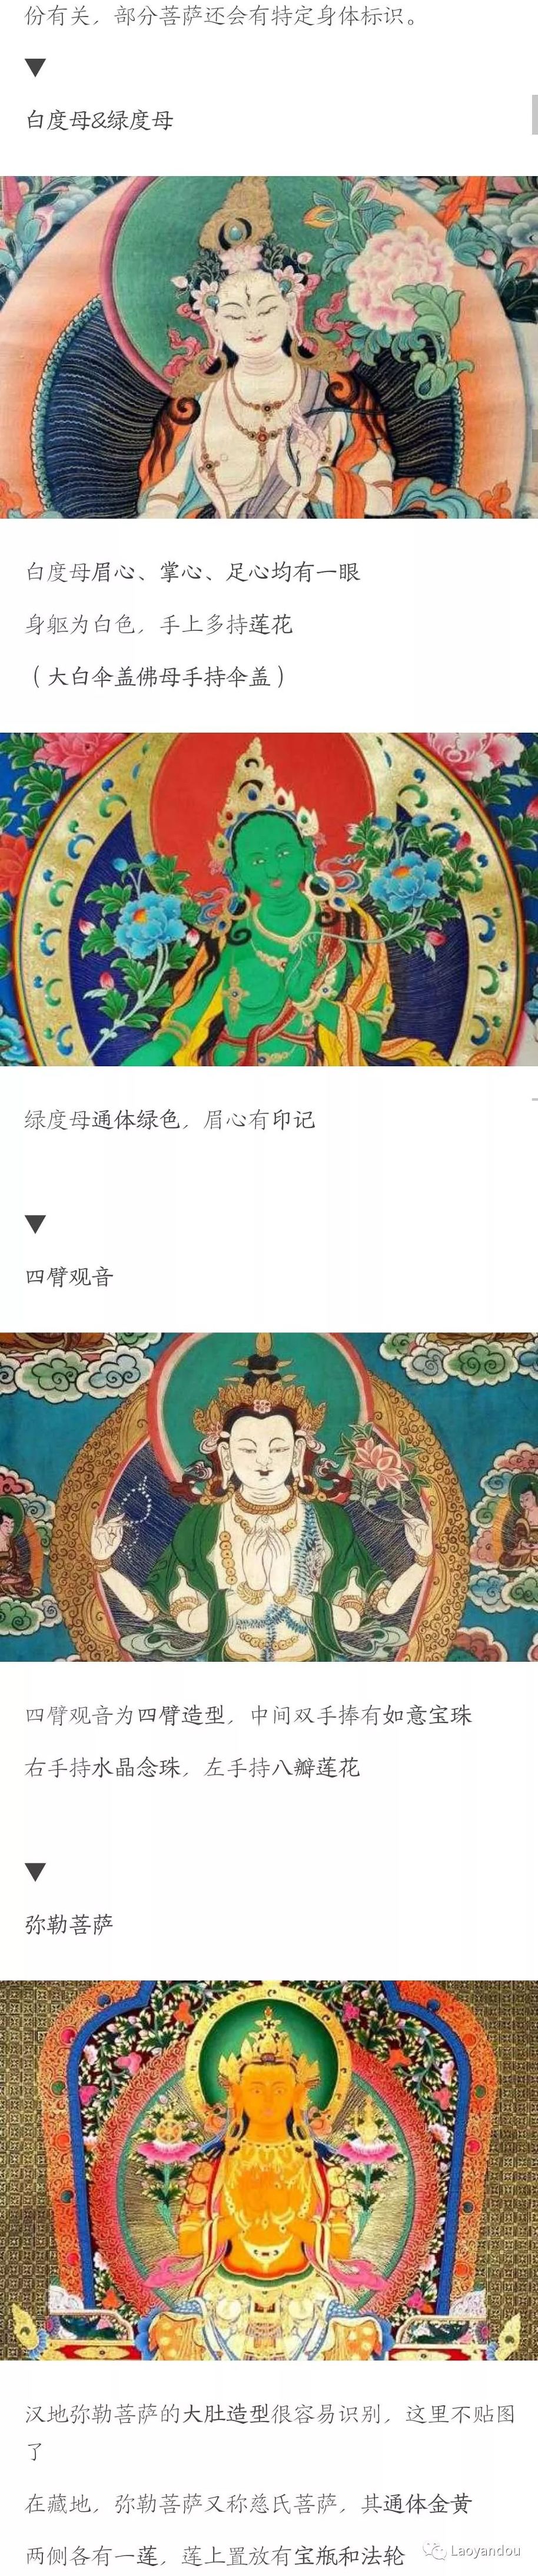 佛菩萨好像长得都一样，怎么从外观上分辨菩萨